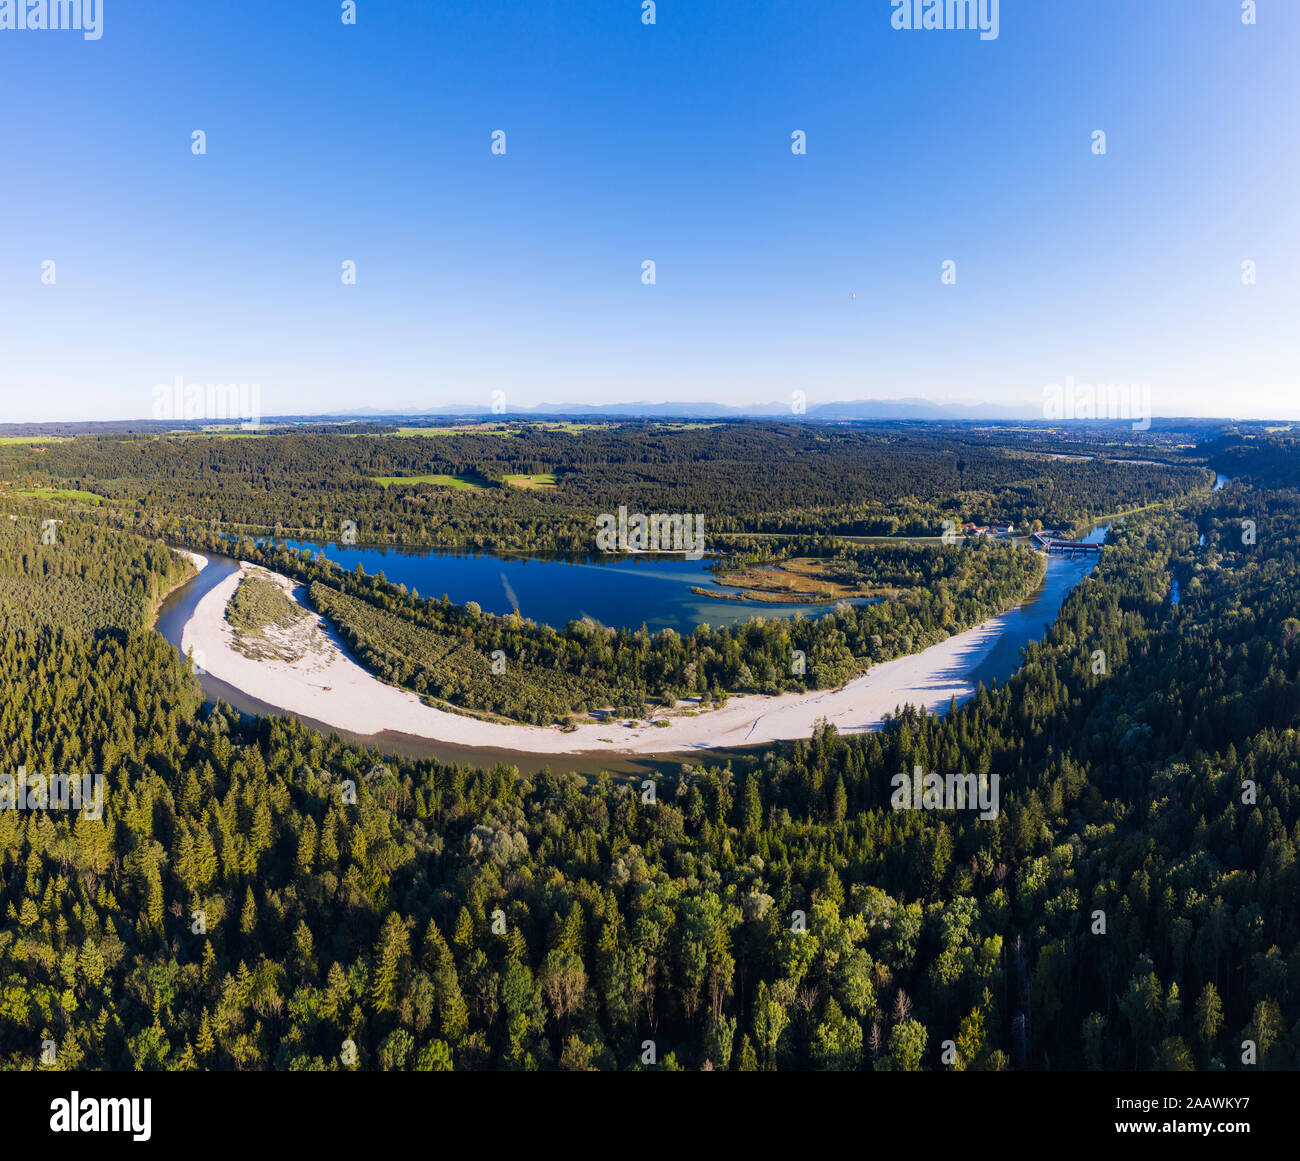 Deutschland, Oberbayern, Icking, Luftaufnahme des Ickinger Weiher von weiten grünen Wald umgeben Stockfoto